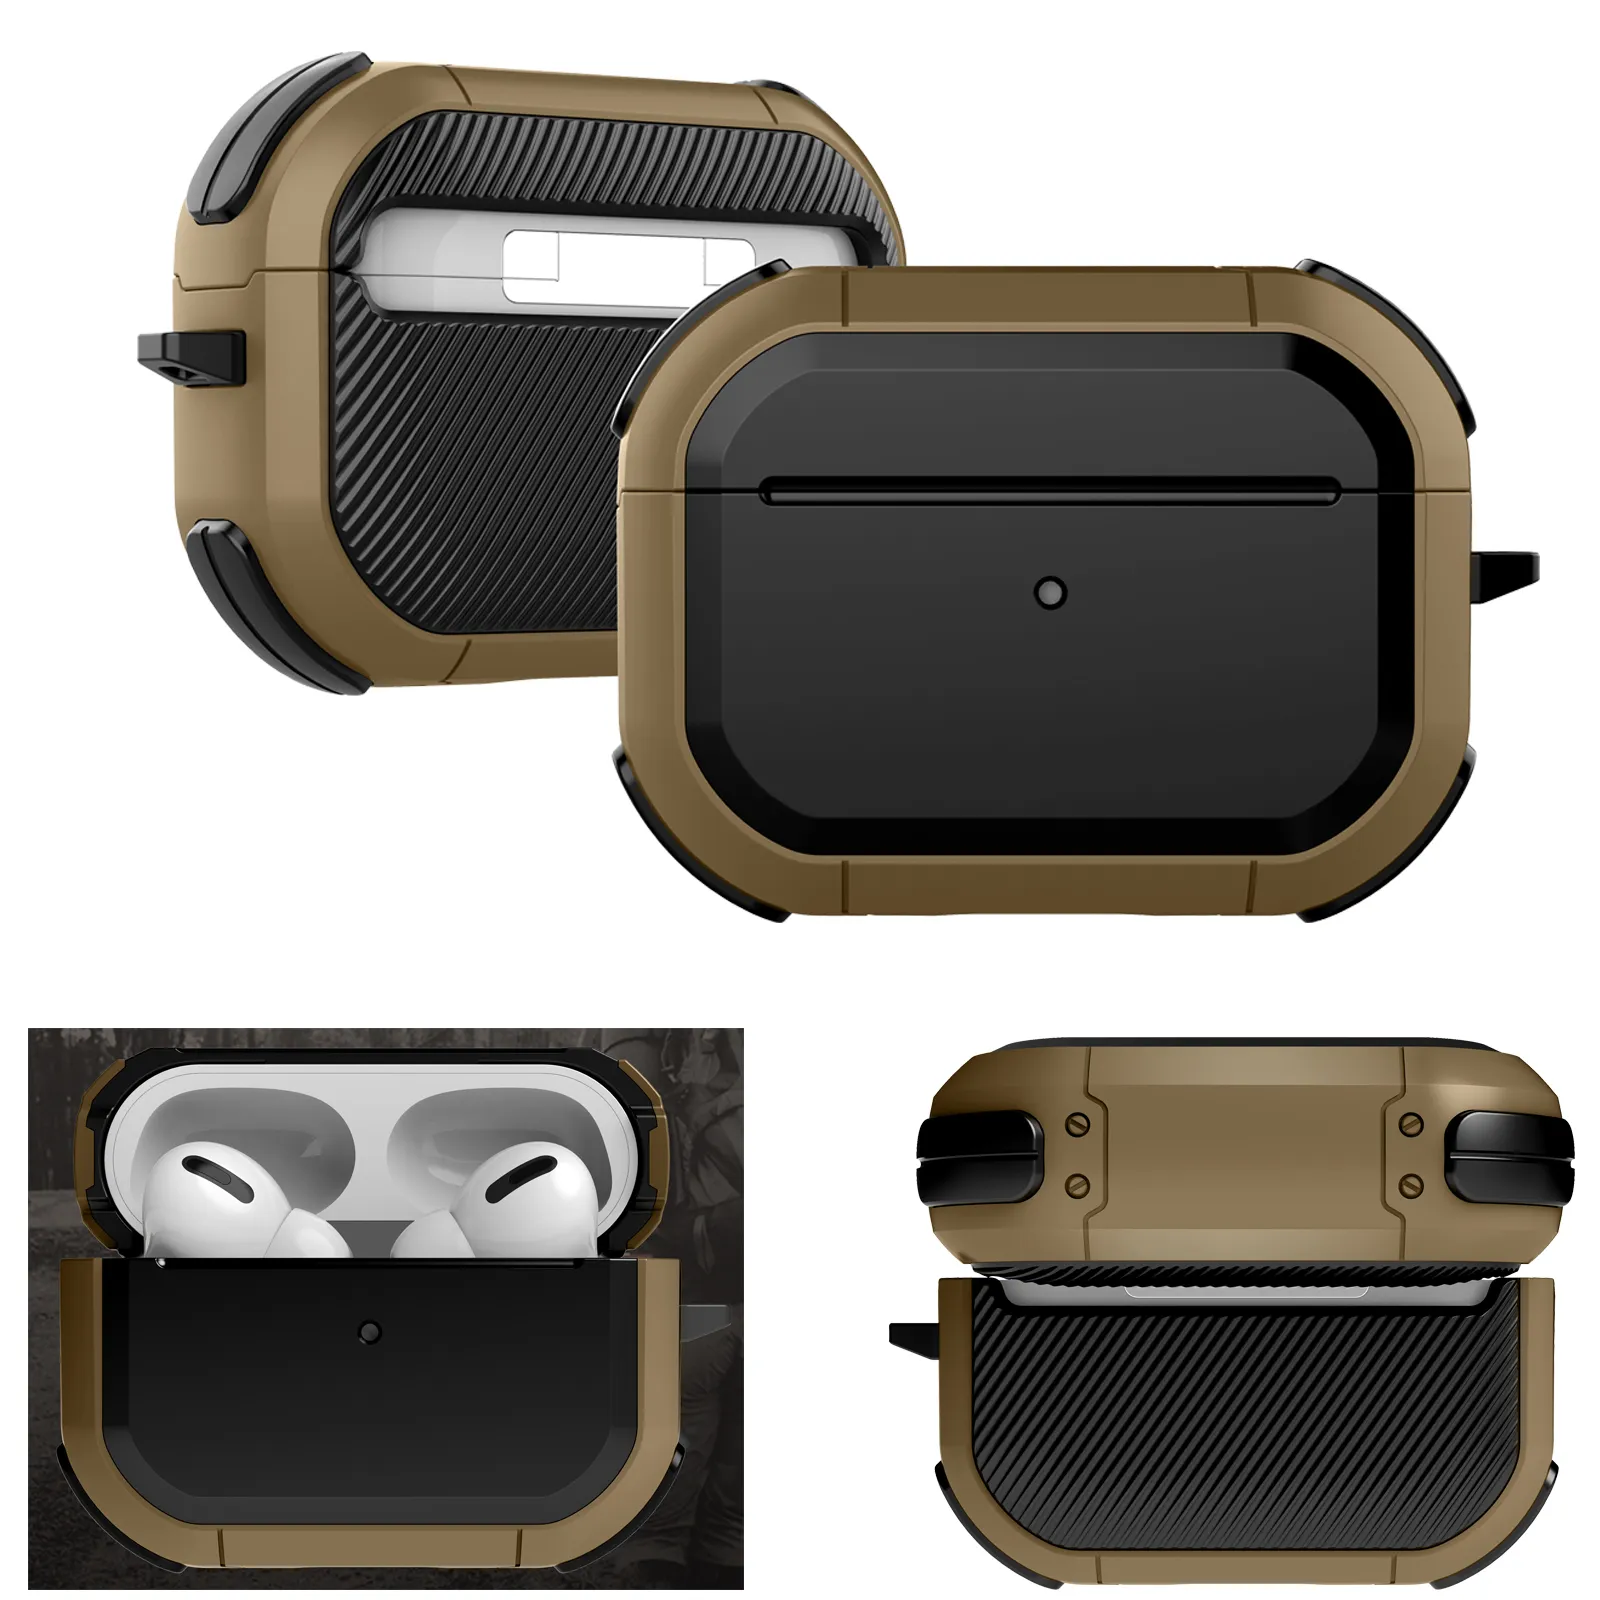 군용 갑옷 하드 에어 포드를위한 전체 보호 케이스 헤드폰 액세서리 3 2021 Carabiner를 사용한 무선 이어폰 커버